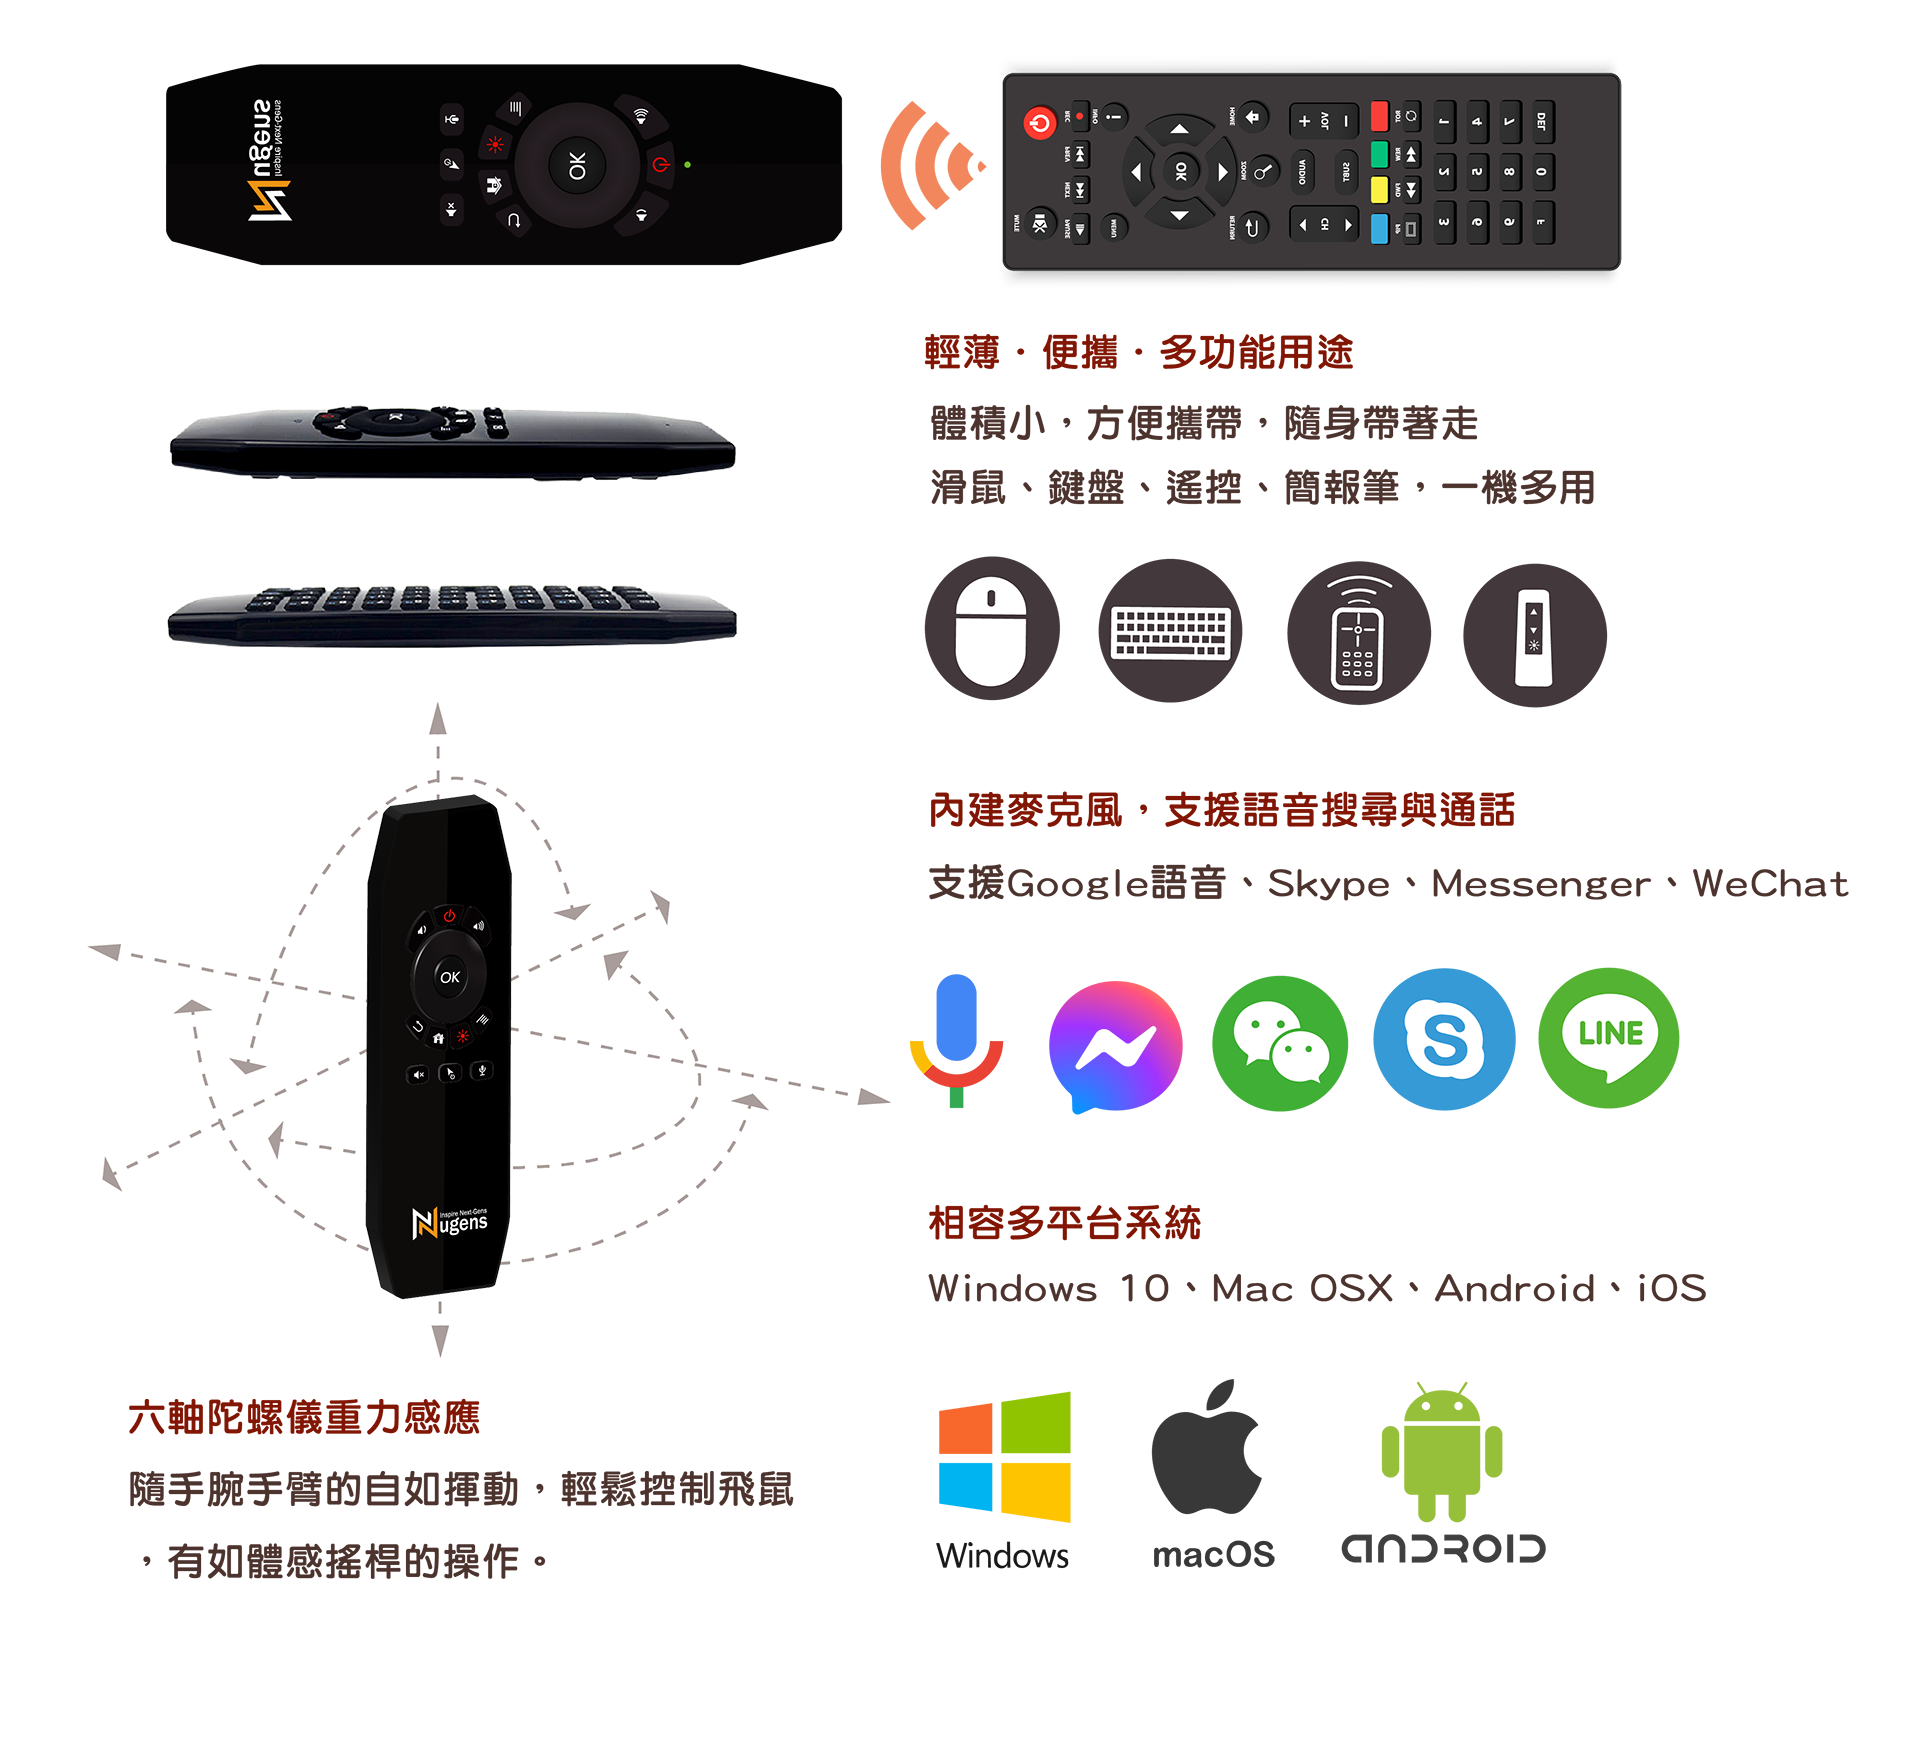 無線語音飛鼠-輕薄便攜多功能用途、相容多平台系統、內建麥克風支援語音搜尋與通話、六軸陀螺儀重力感應設計